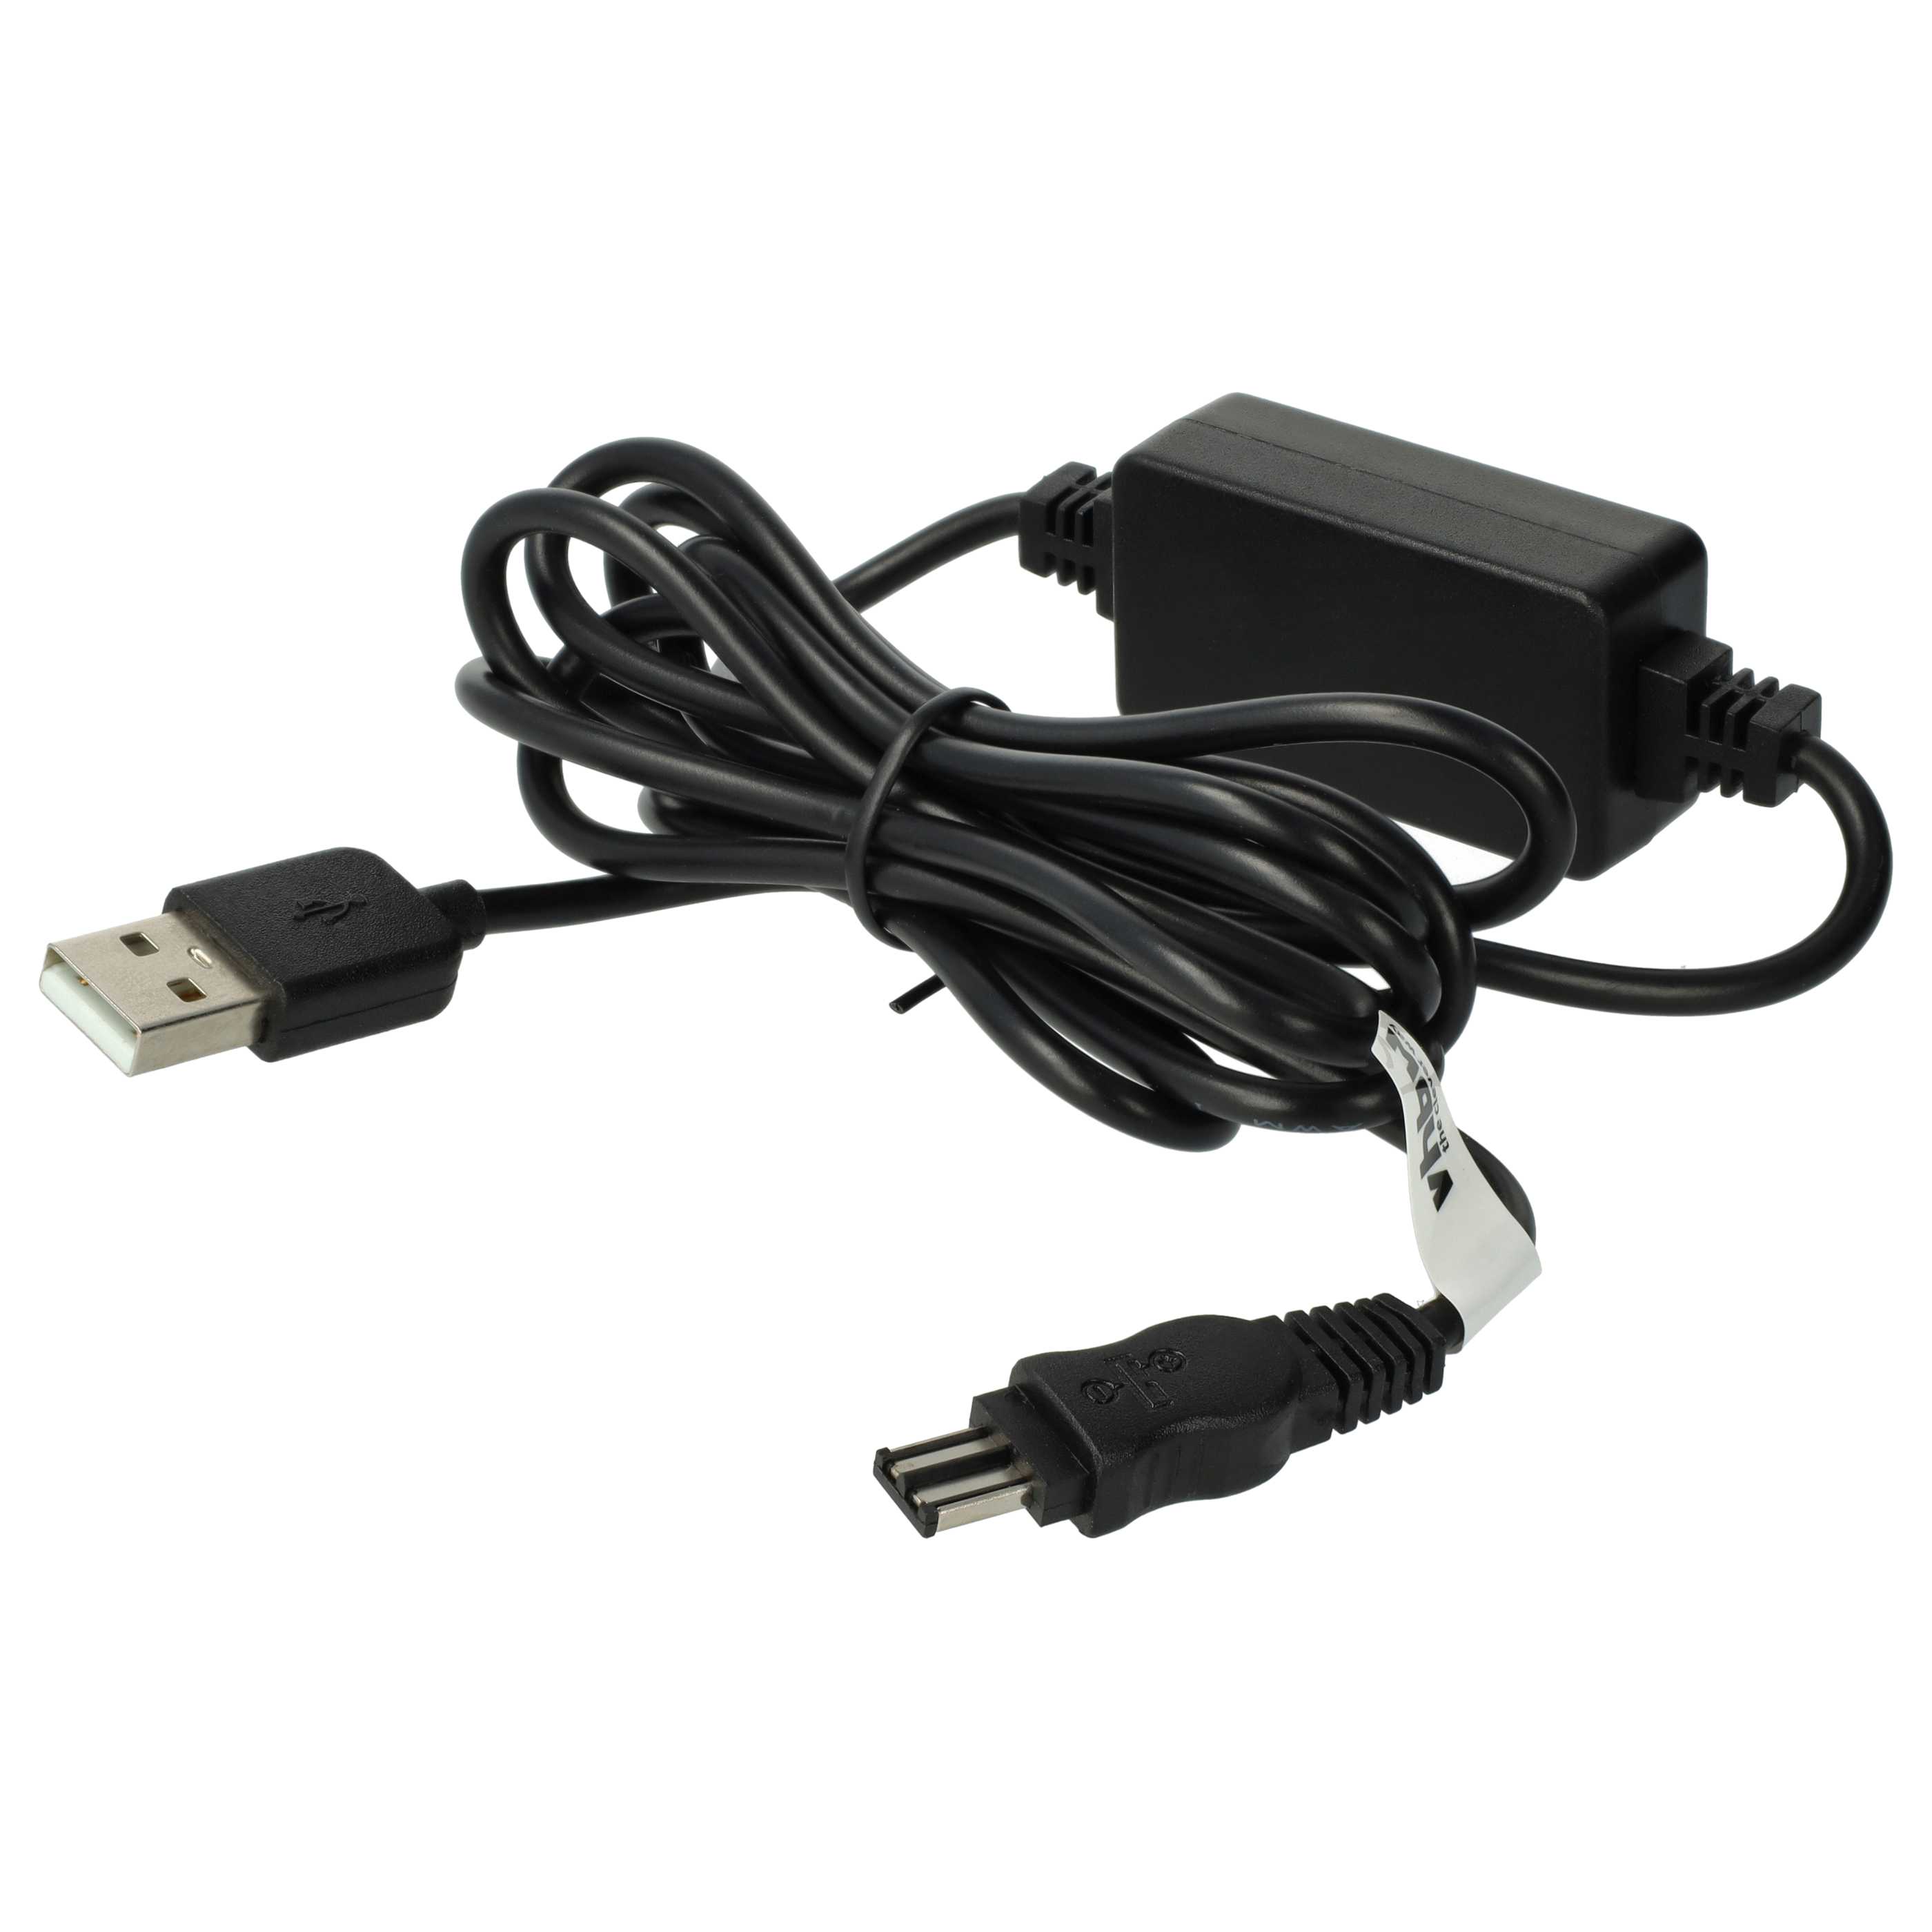 USB Netzteil als Ersatz für Sony AC-L10, AC-L100, AC-L10A, AC-L15A, AC-L15B, AC-L10B, AC-L15 für Kamera